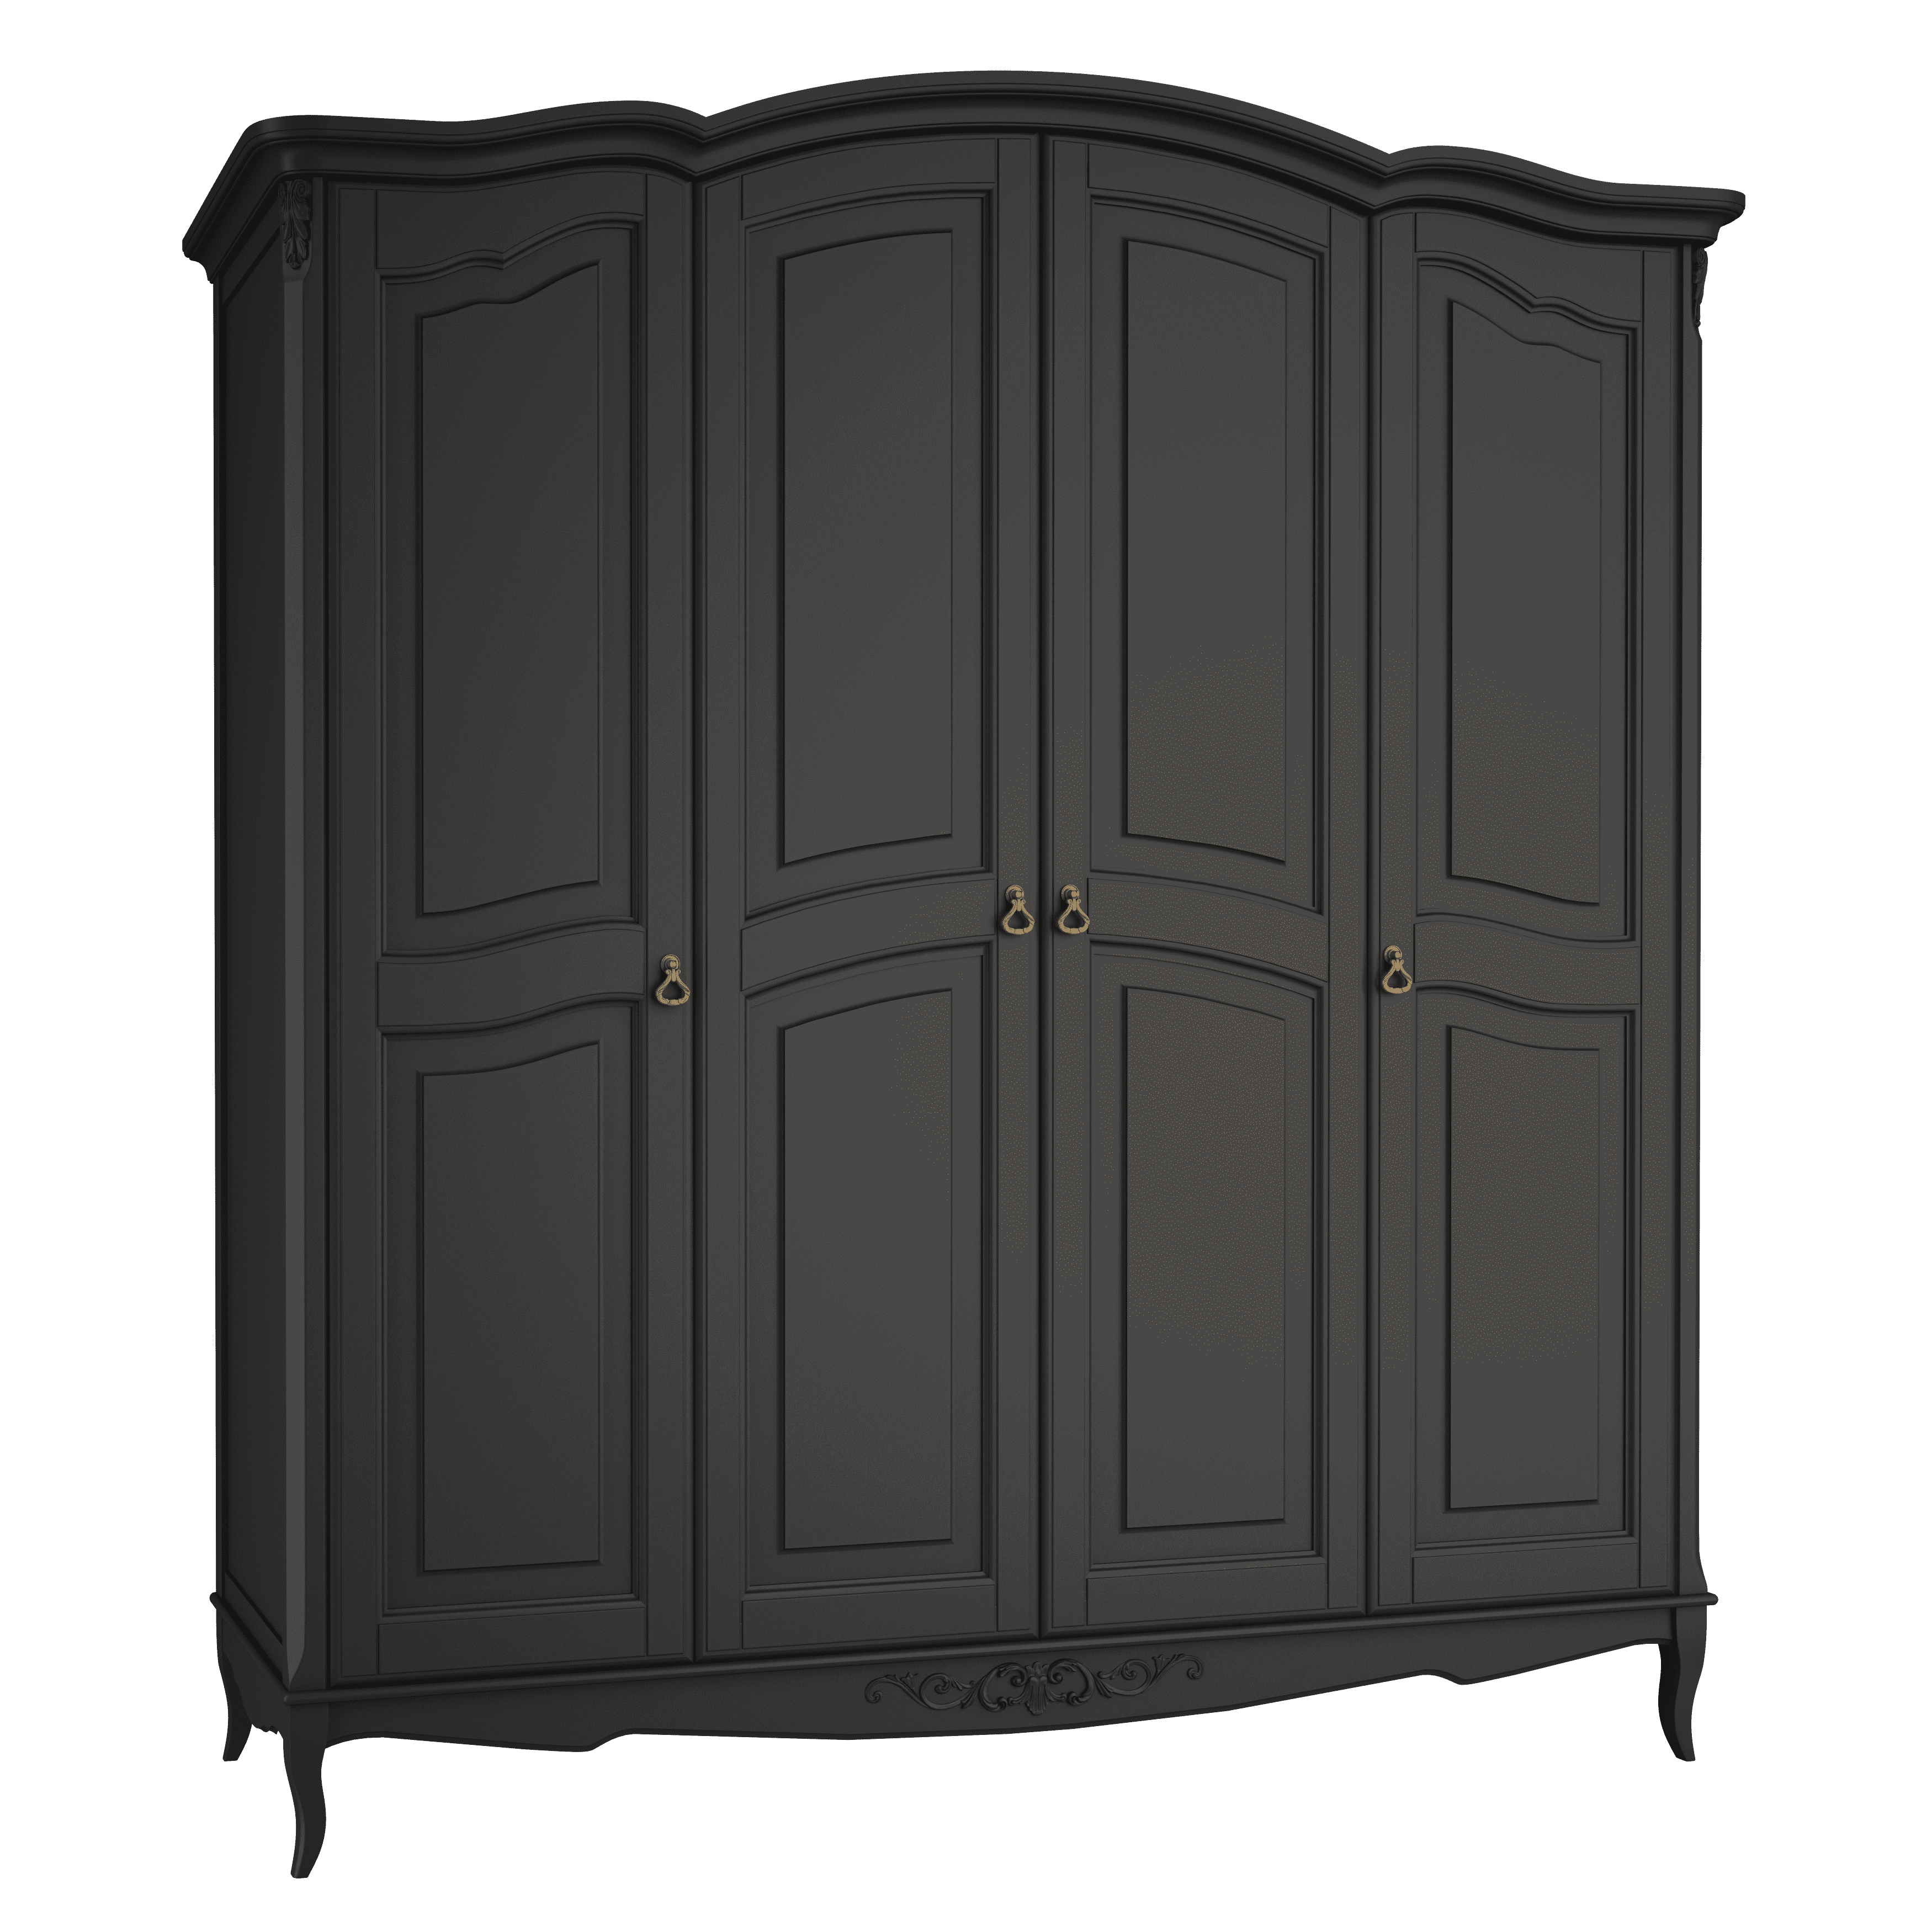 Шкаф платяной Aletan Provence, 4-х дверный, цвет: черный, размер 209х66х226 см (B804BL)B804BL